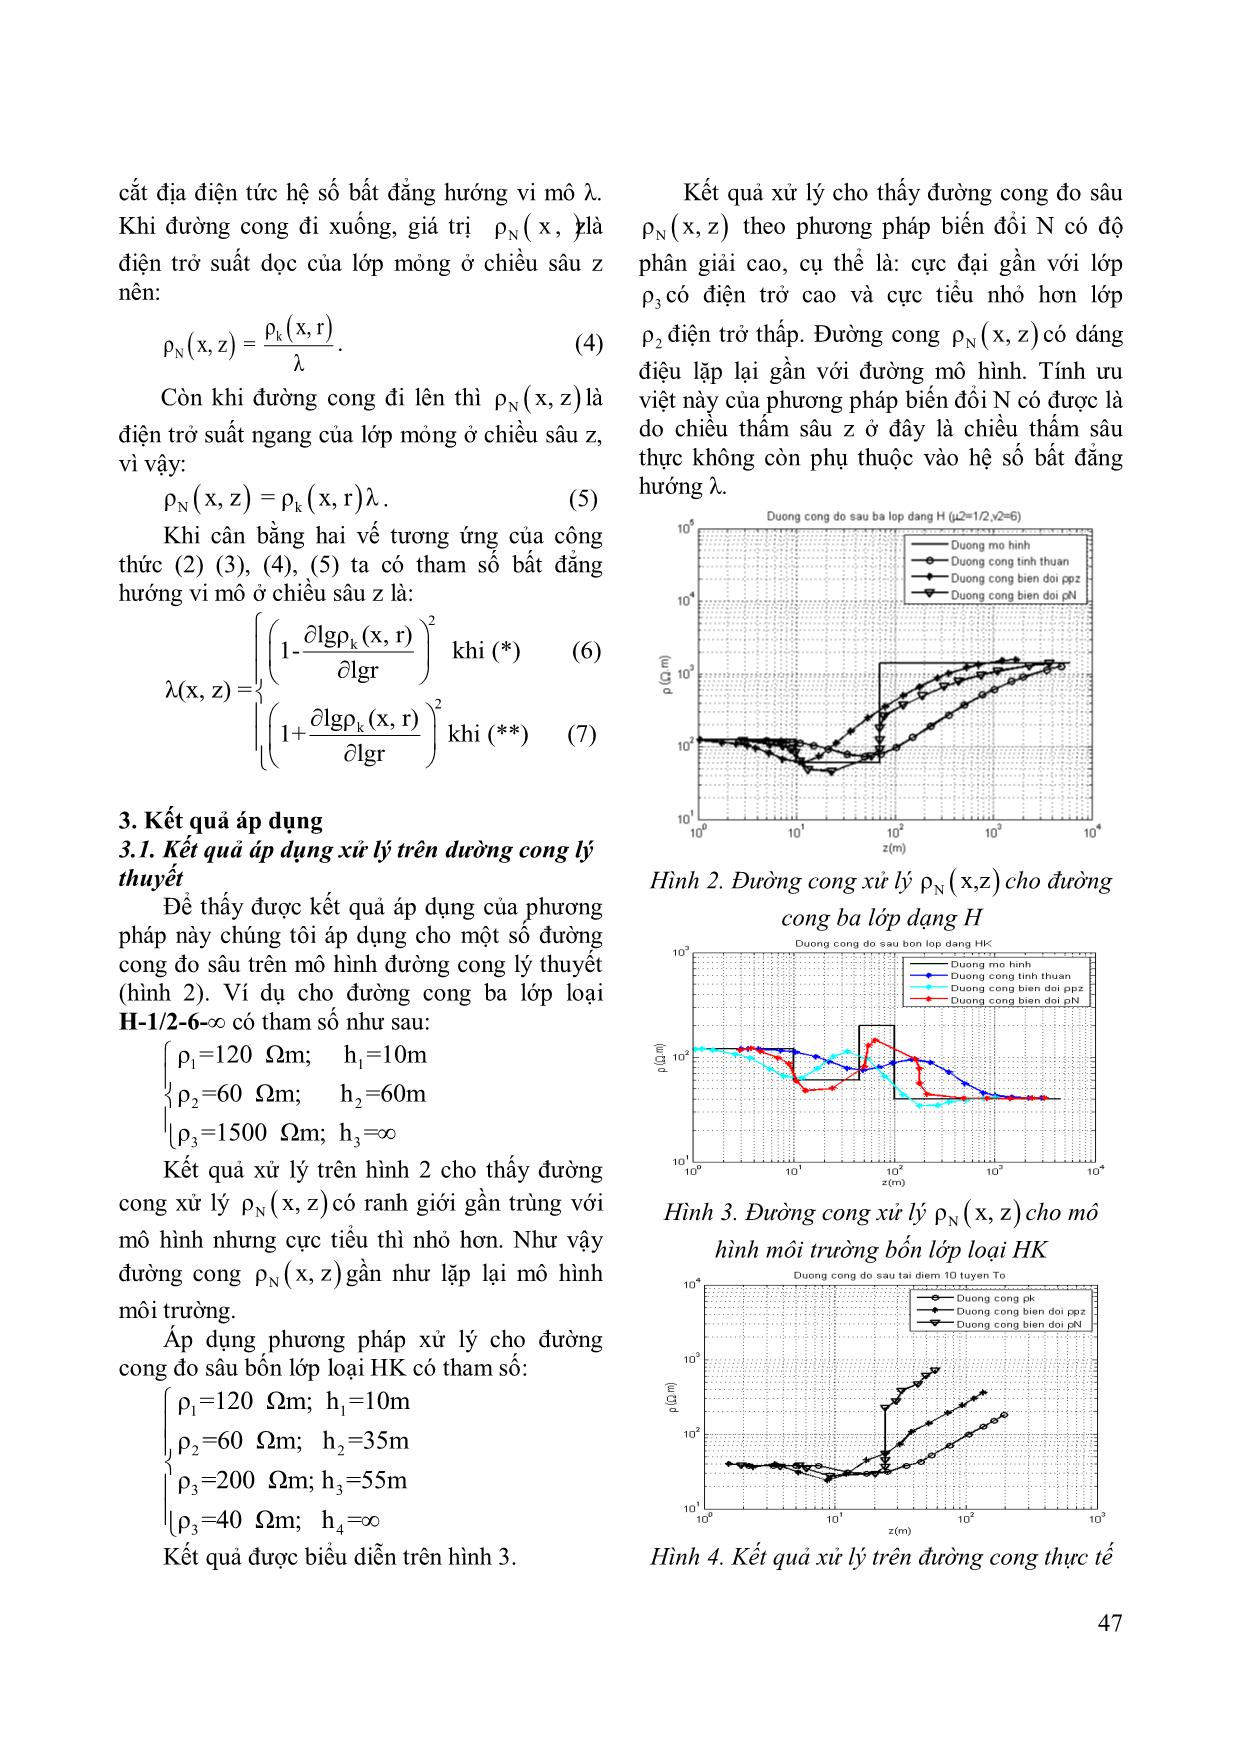 Phương pháp biến đổi N xử lý đường cong đo sâu điện trên lát cắt địa điện biến đổi liên tục trang 3